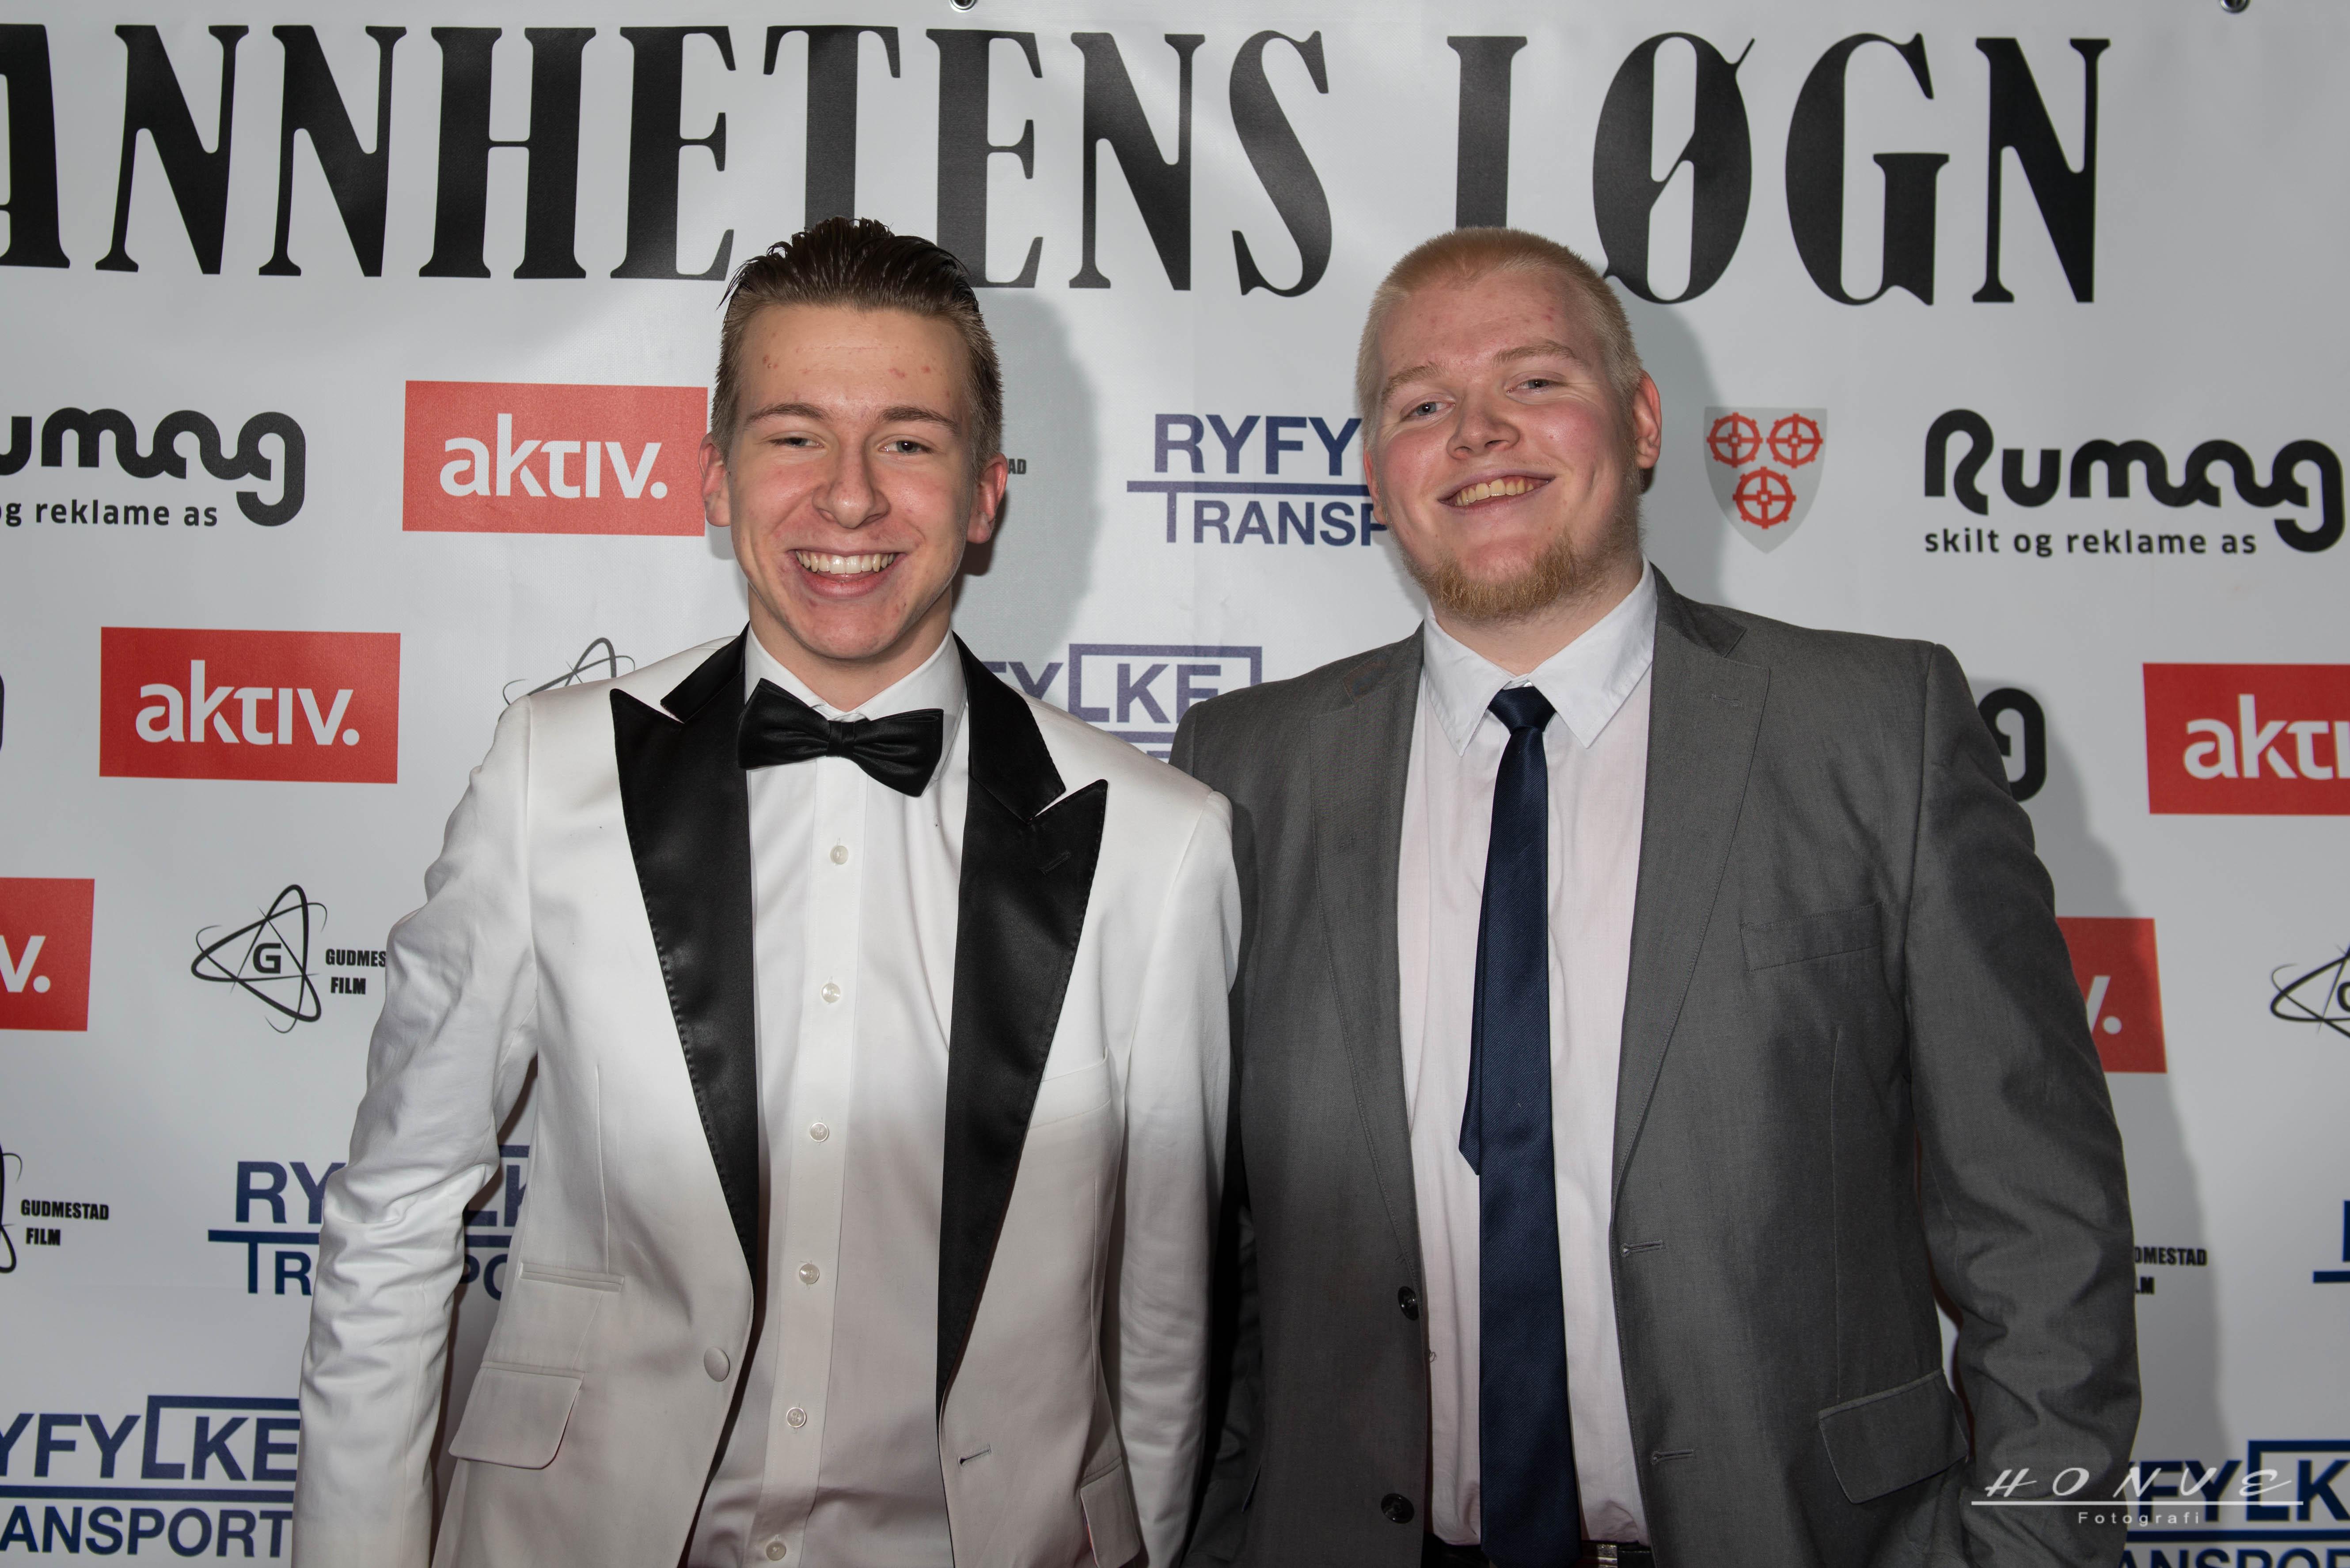 Tor Einar Gudmestad and Daniel Bratteli at the event of Sannhetens Løgn (2015)